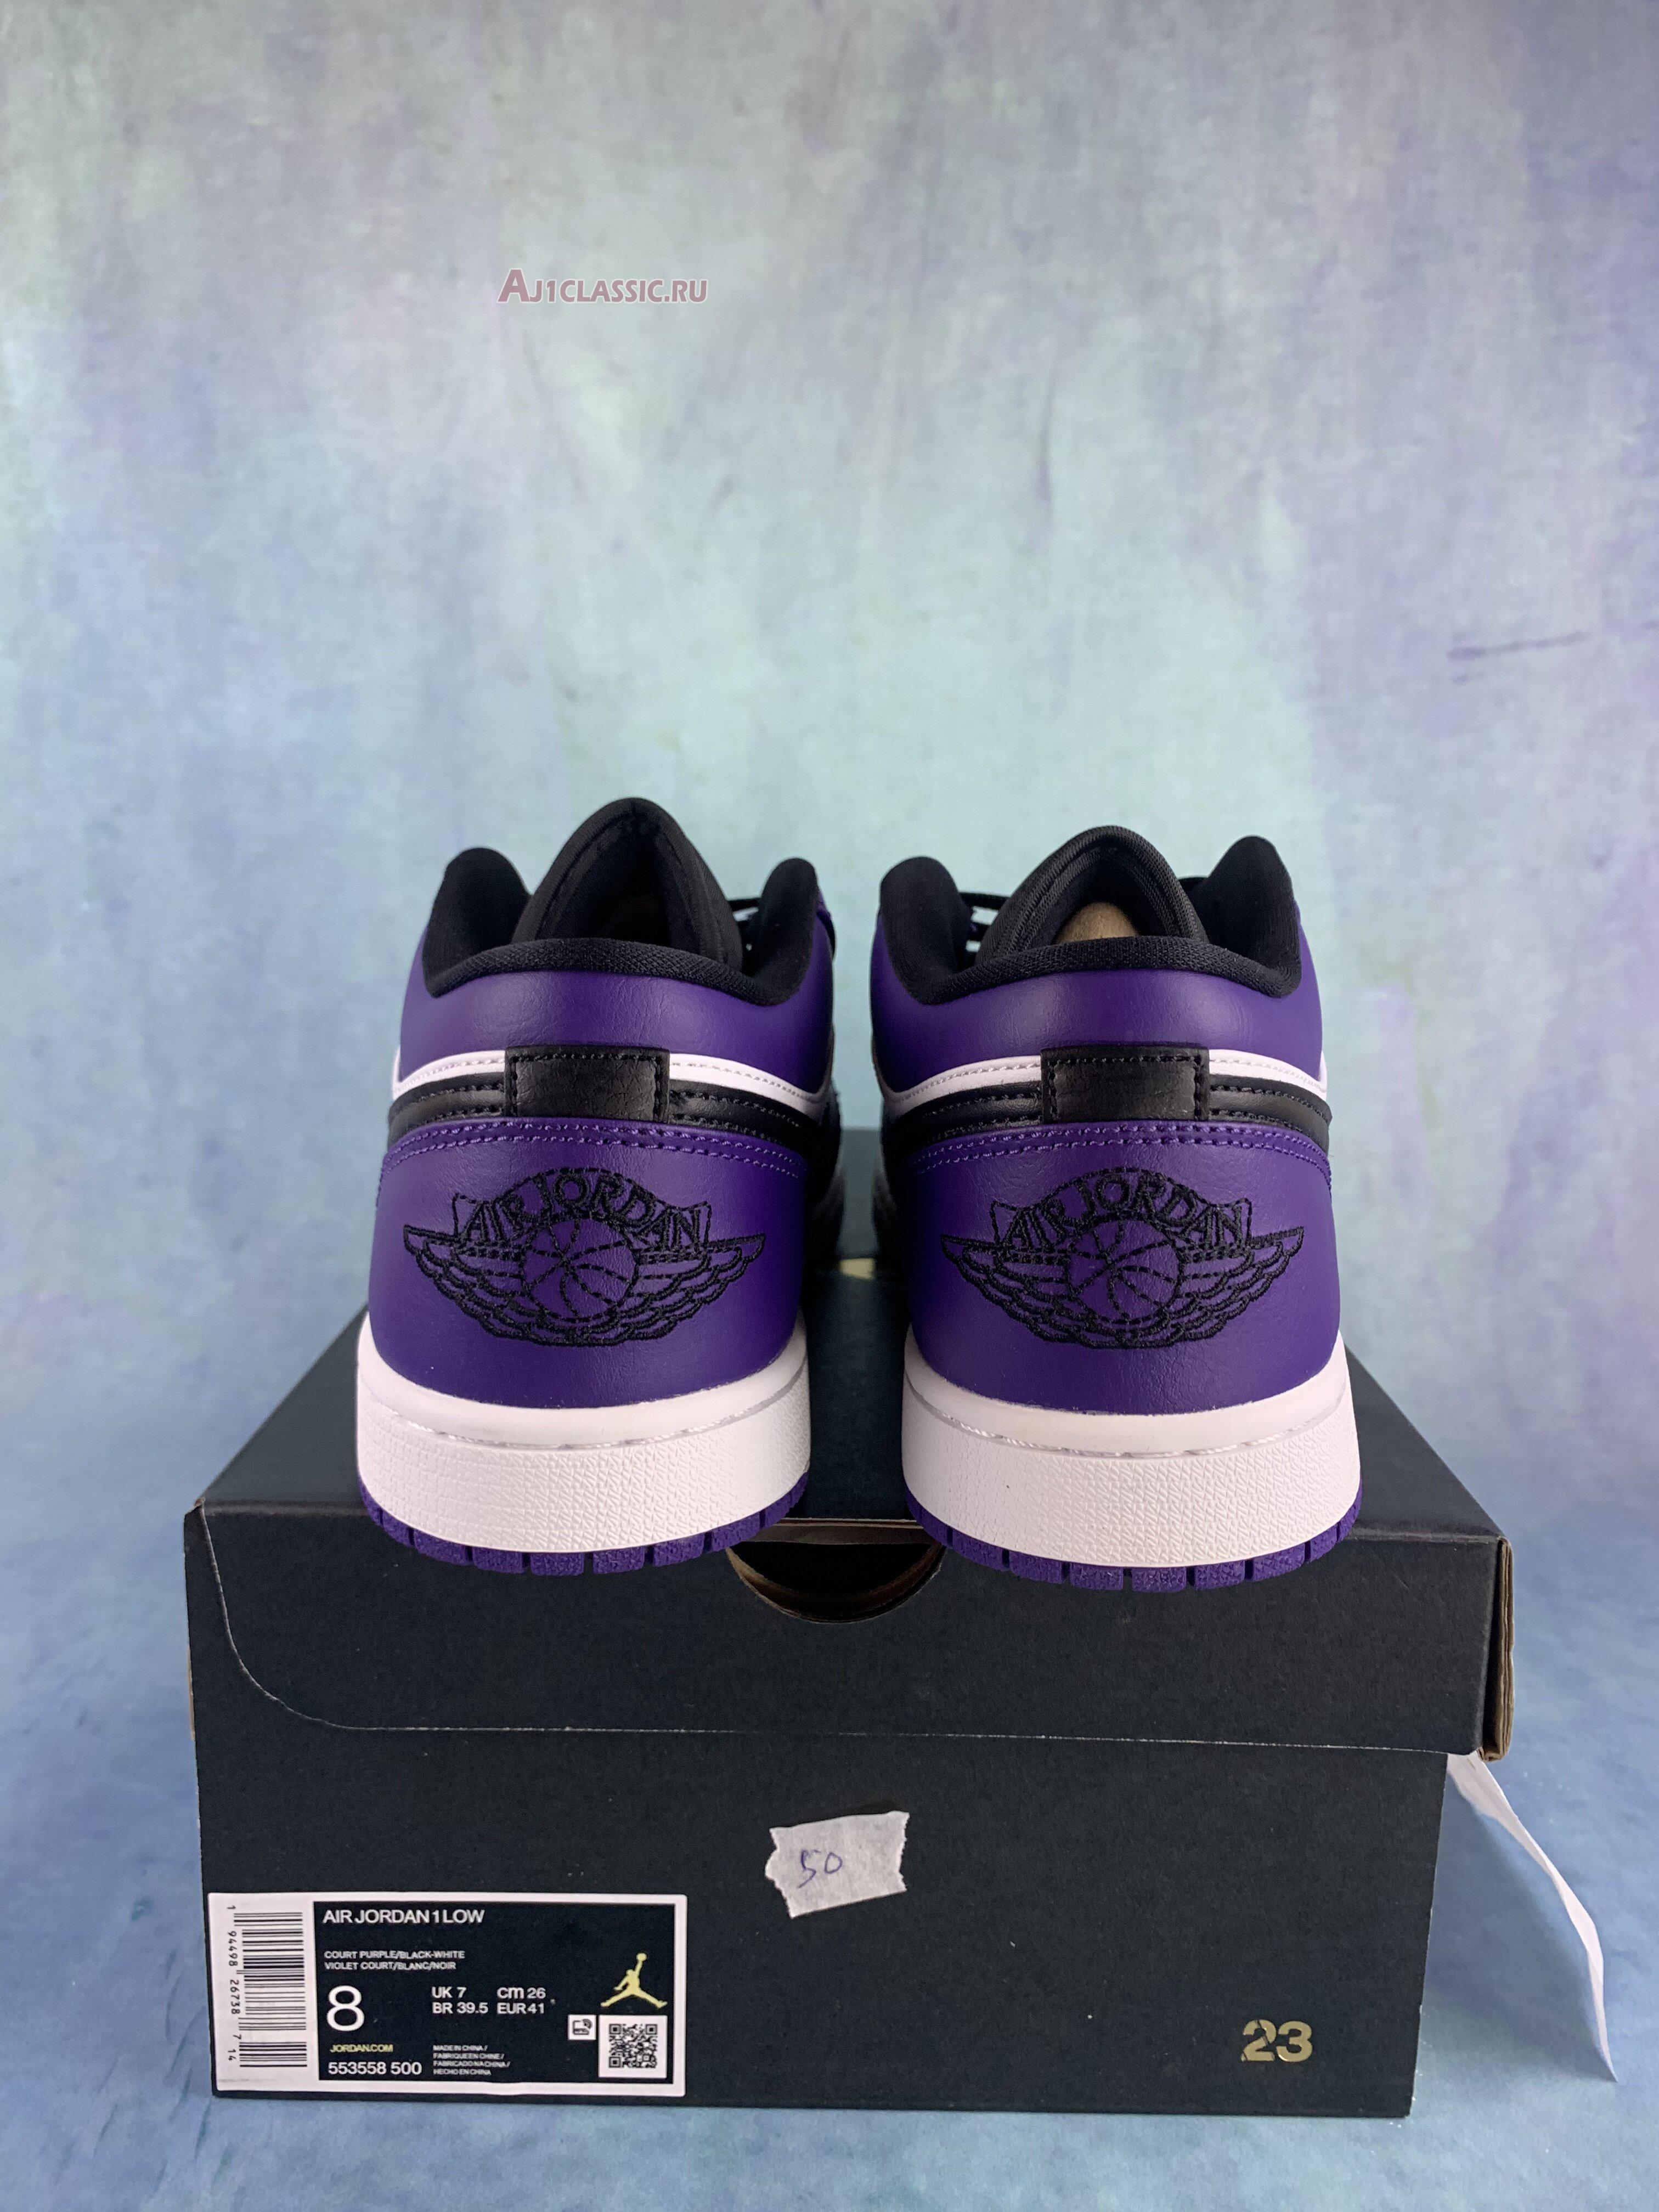 Air Jordan 1 Low "Court Purple" 553558-500-2